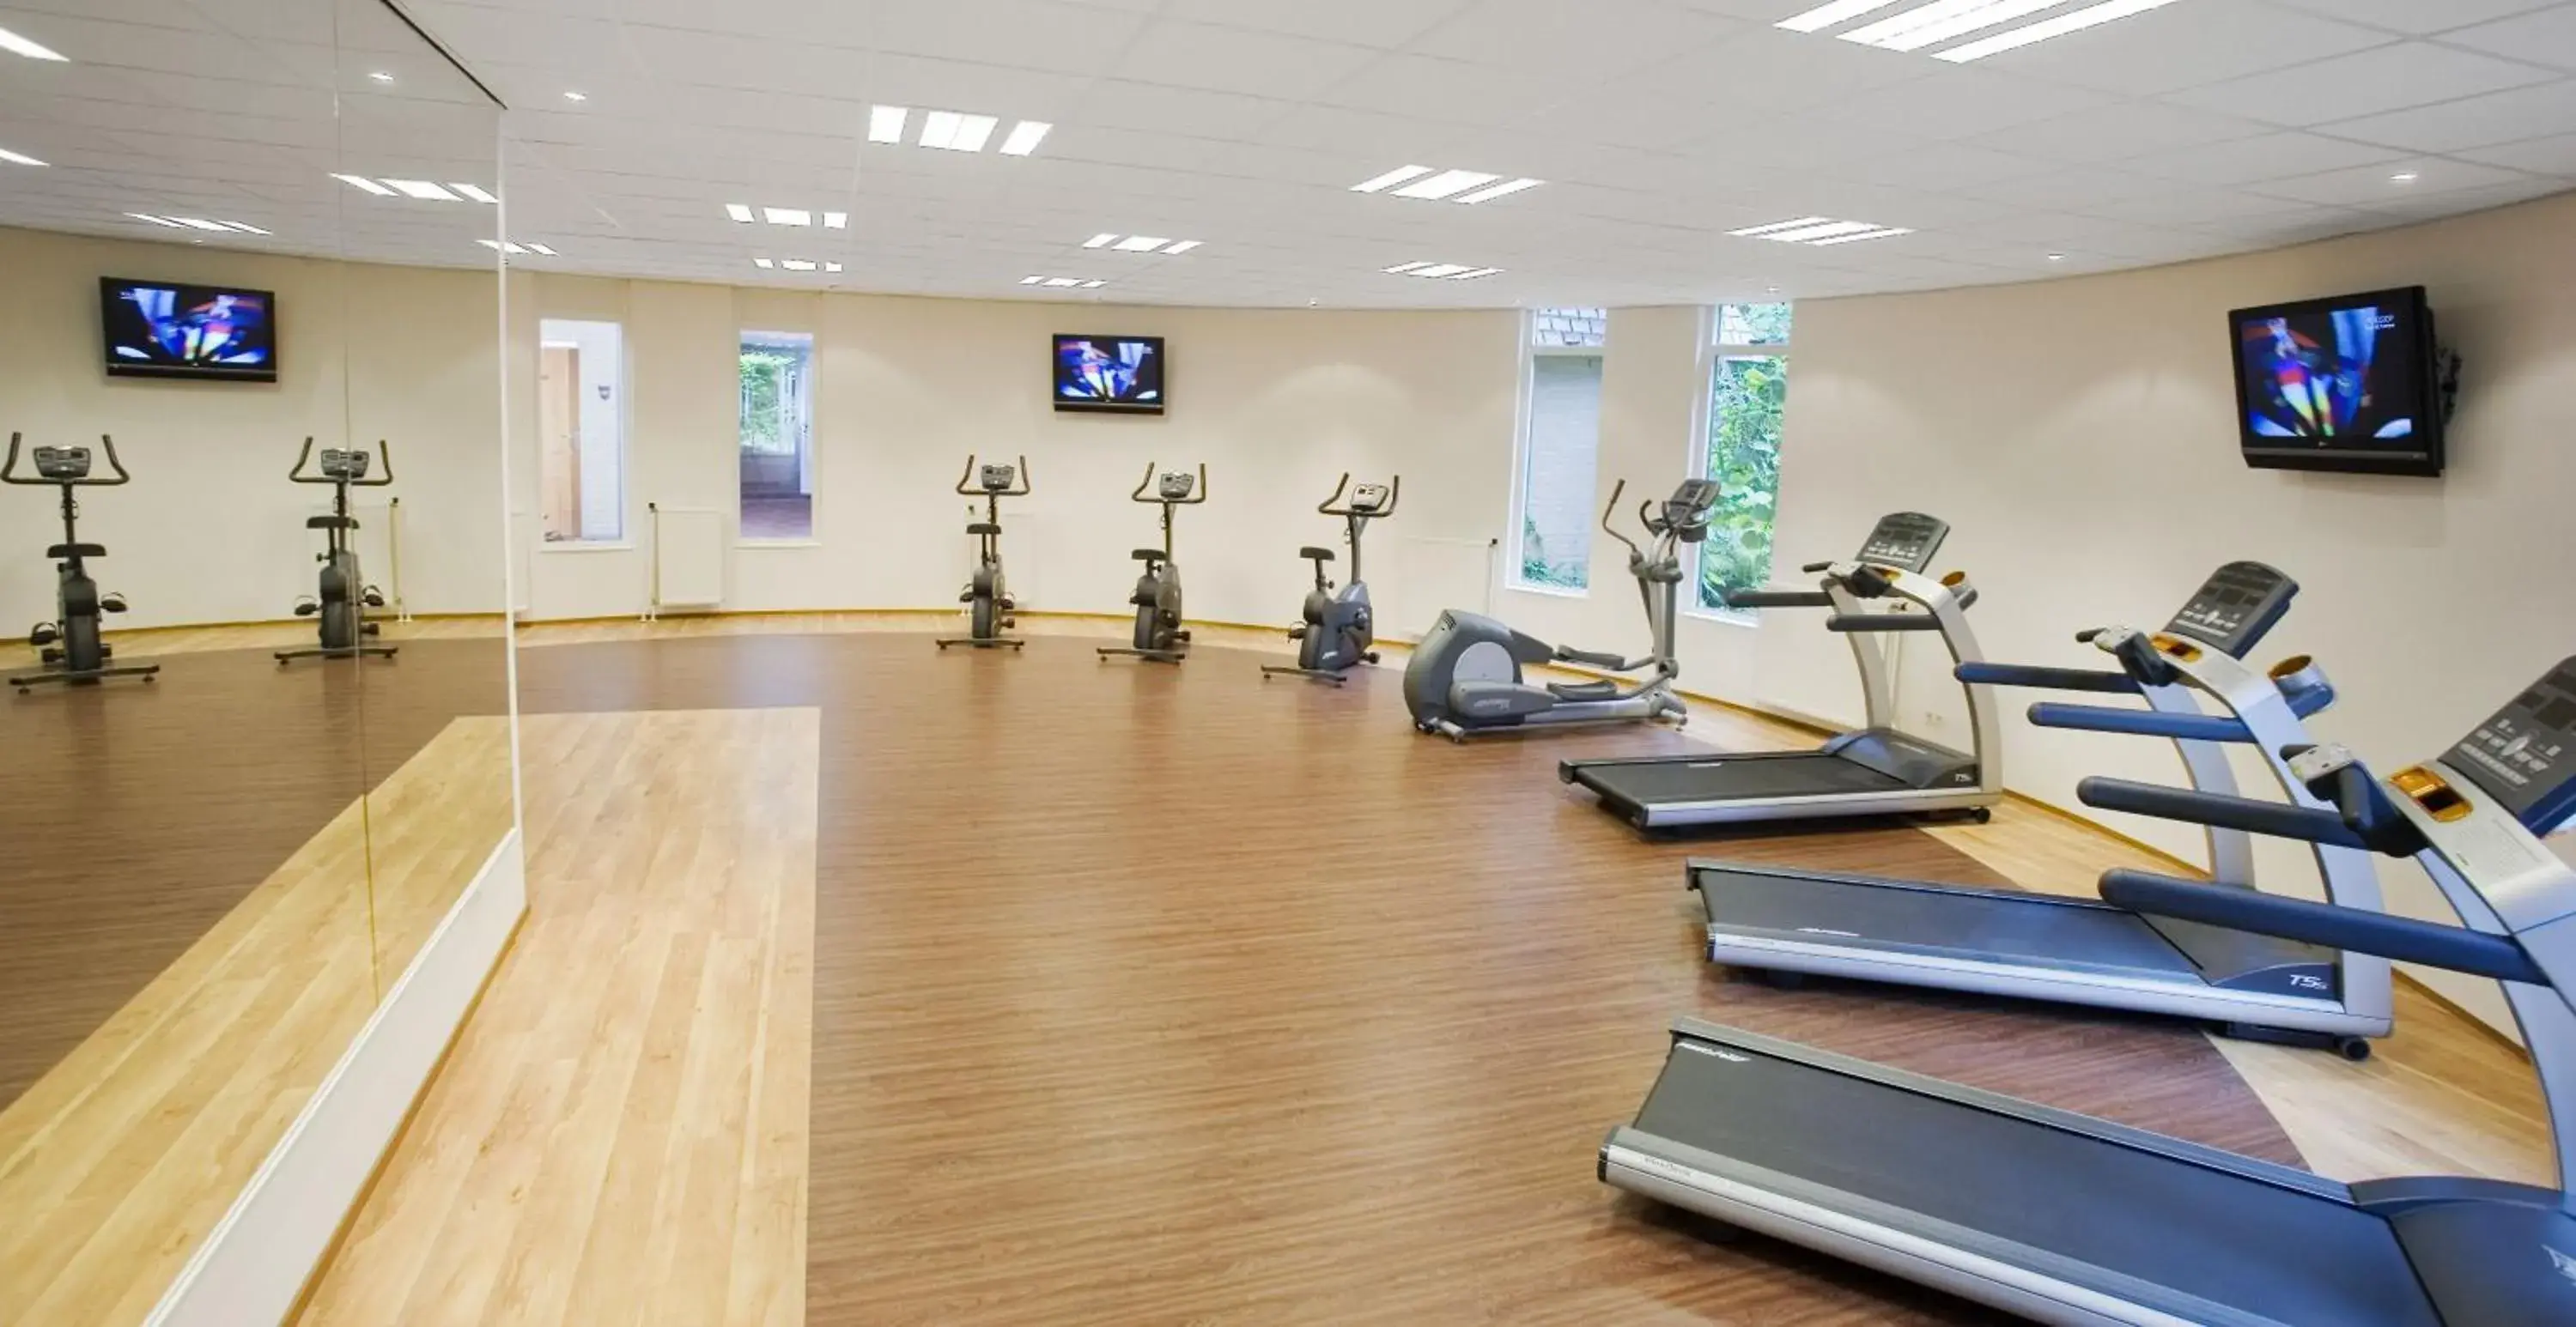 Fitness centre/facilities, Fitness Center/Facilities in Bilderberg Hotel 't Speulderbos